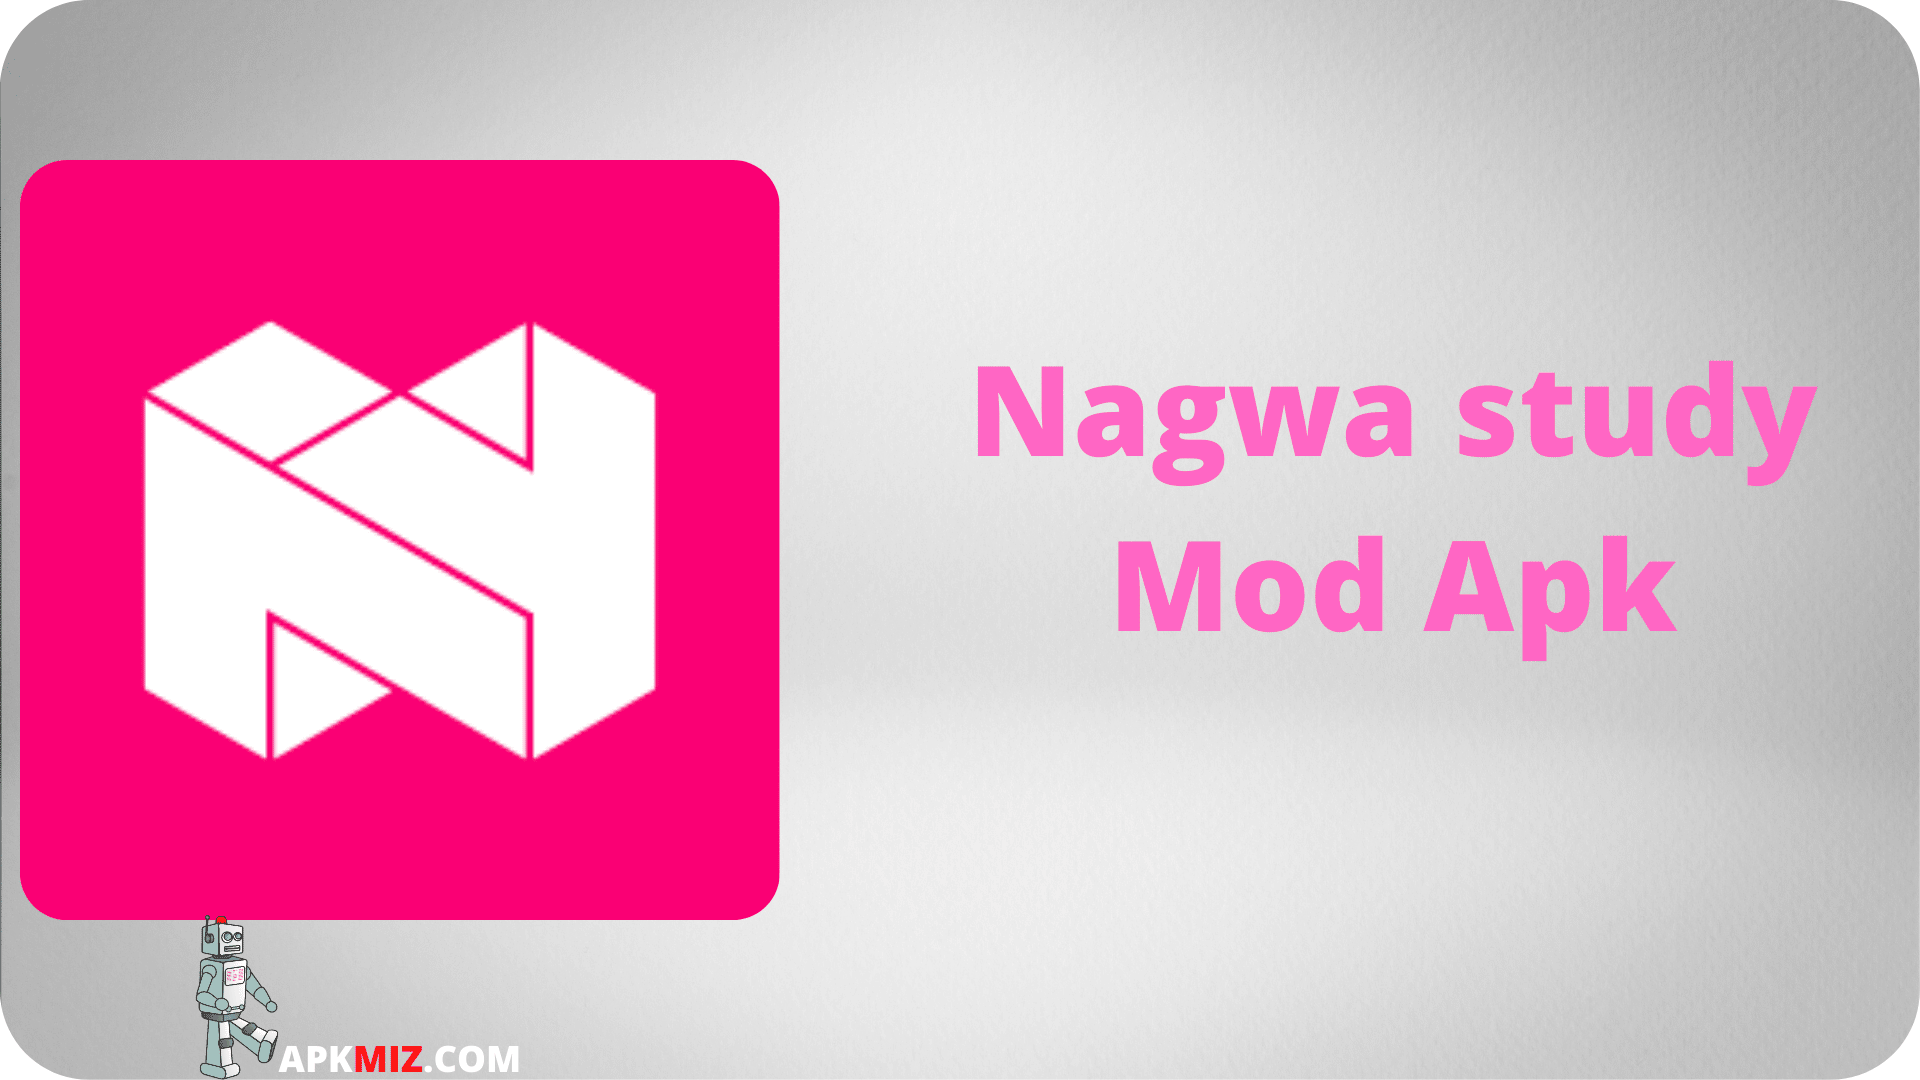 Nagwa study Mod Apk